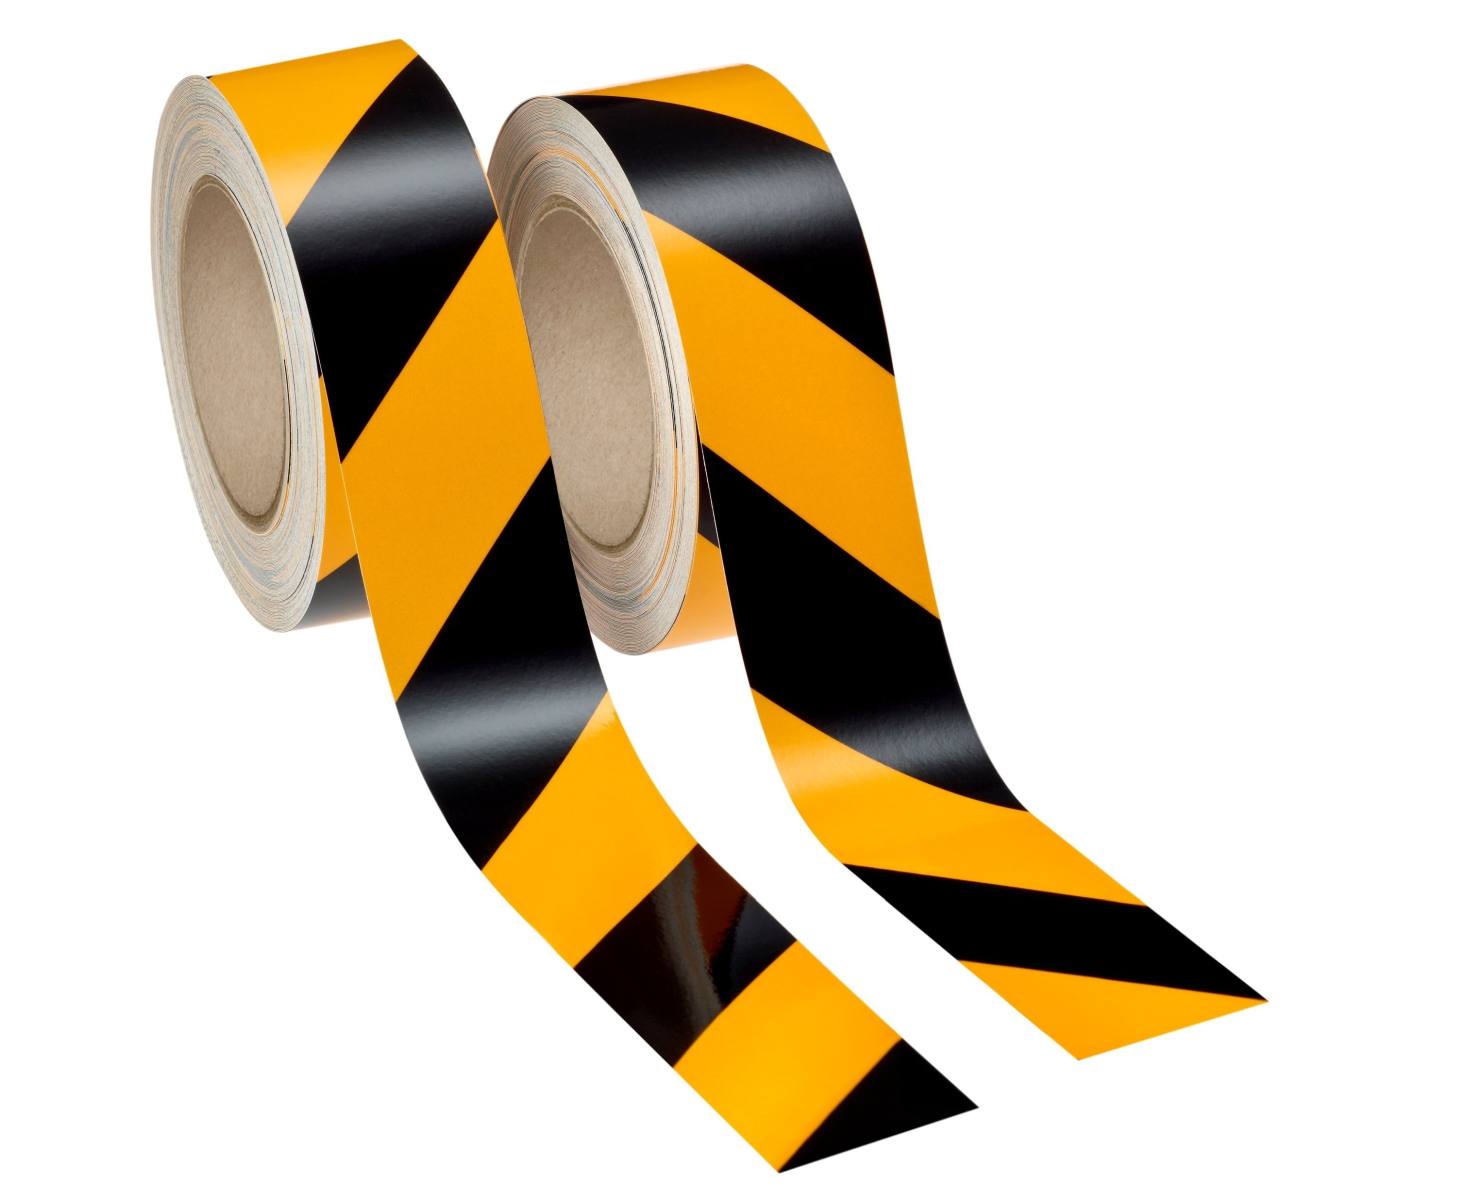 3M teollisuuden varoitusmerkinnät 13058A50 musta/keltainen, heijastava, itseliimautuva, 1 rulla oikealle, 1 rulla vasemmalle, 50 mm x 25 m, sis. liimapyyhkeen.